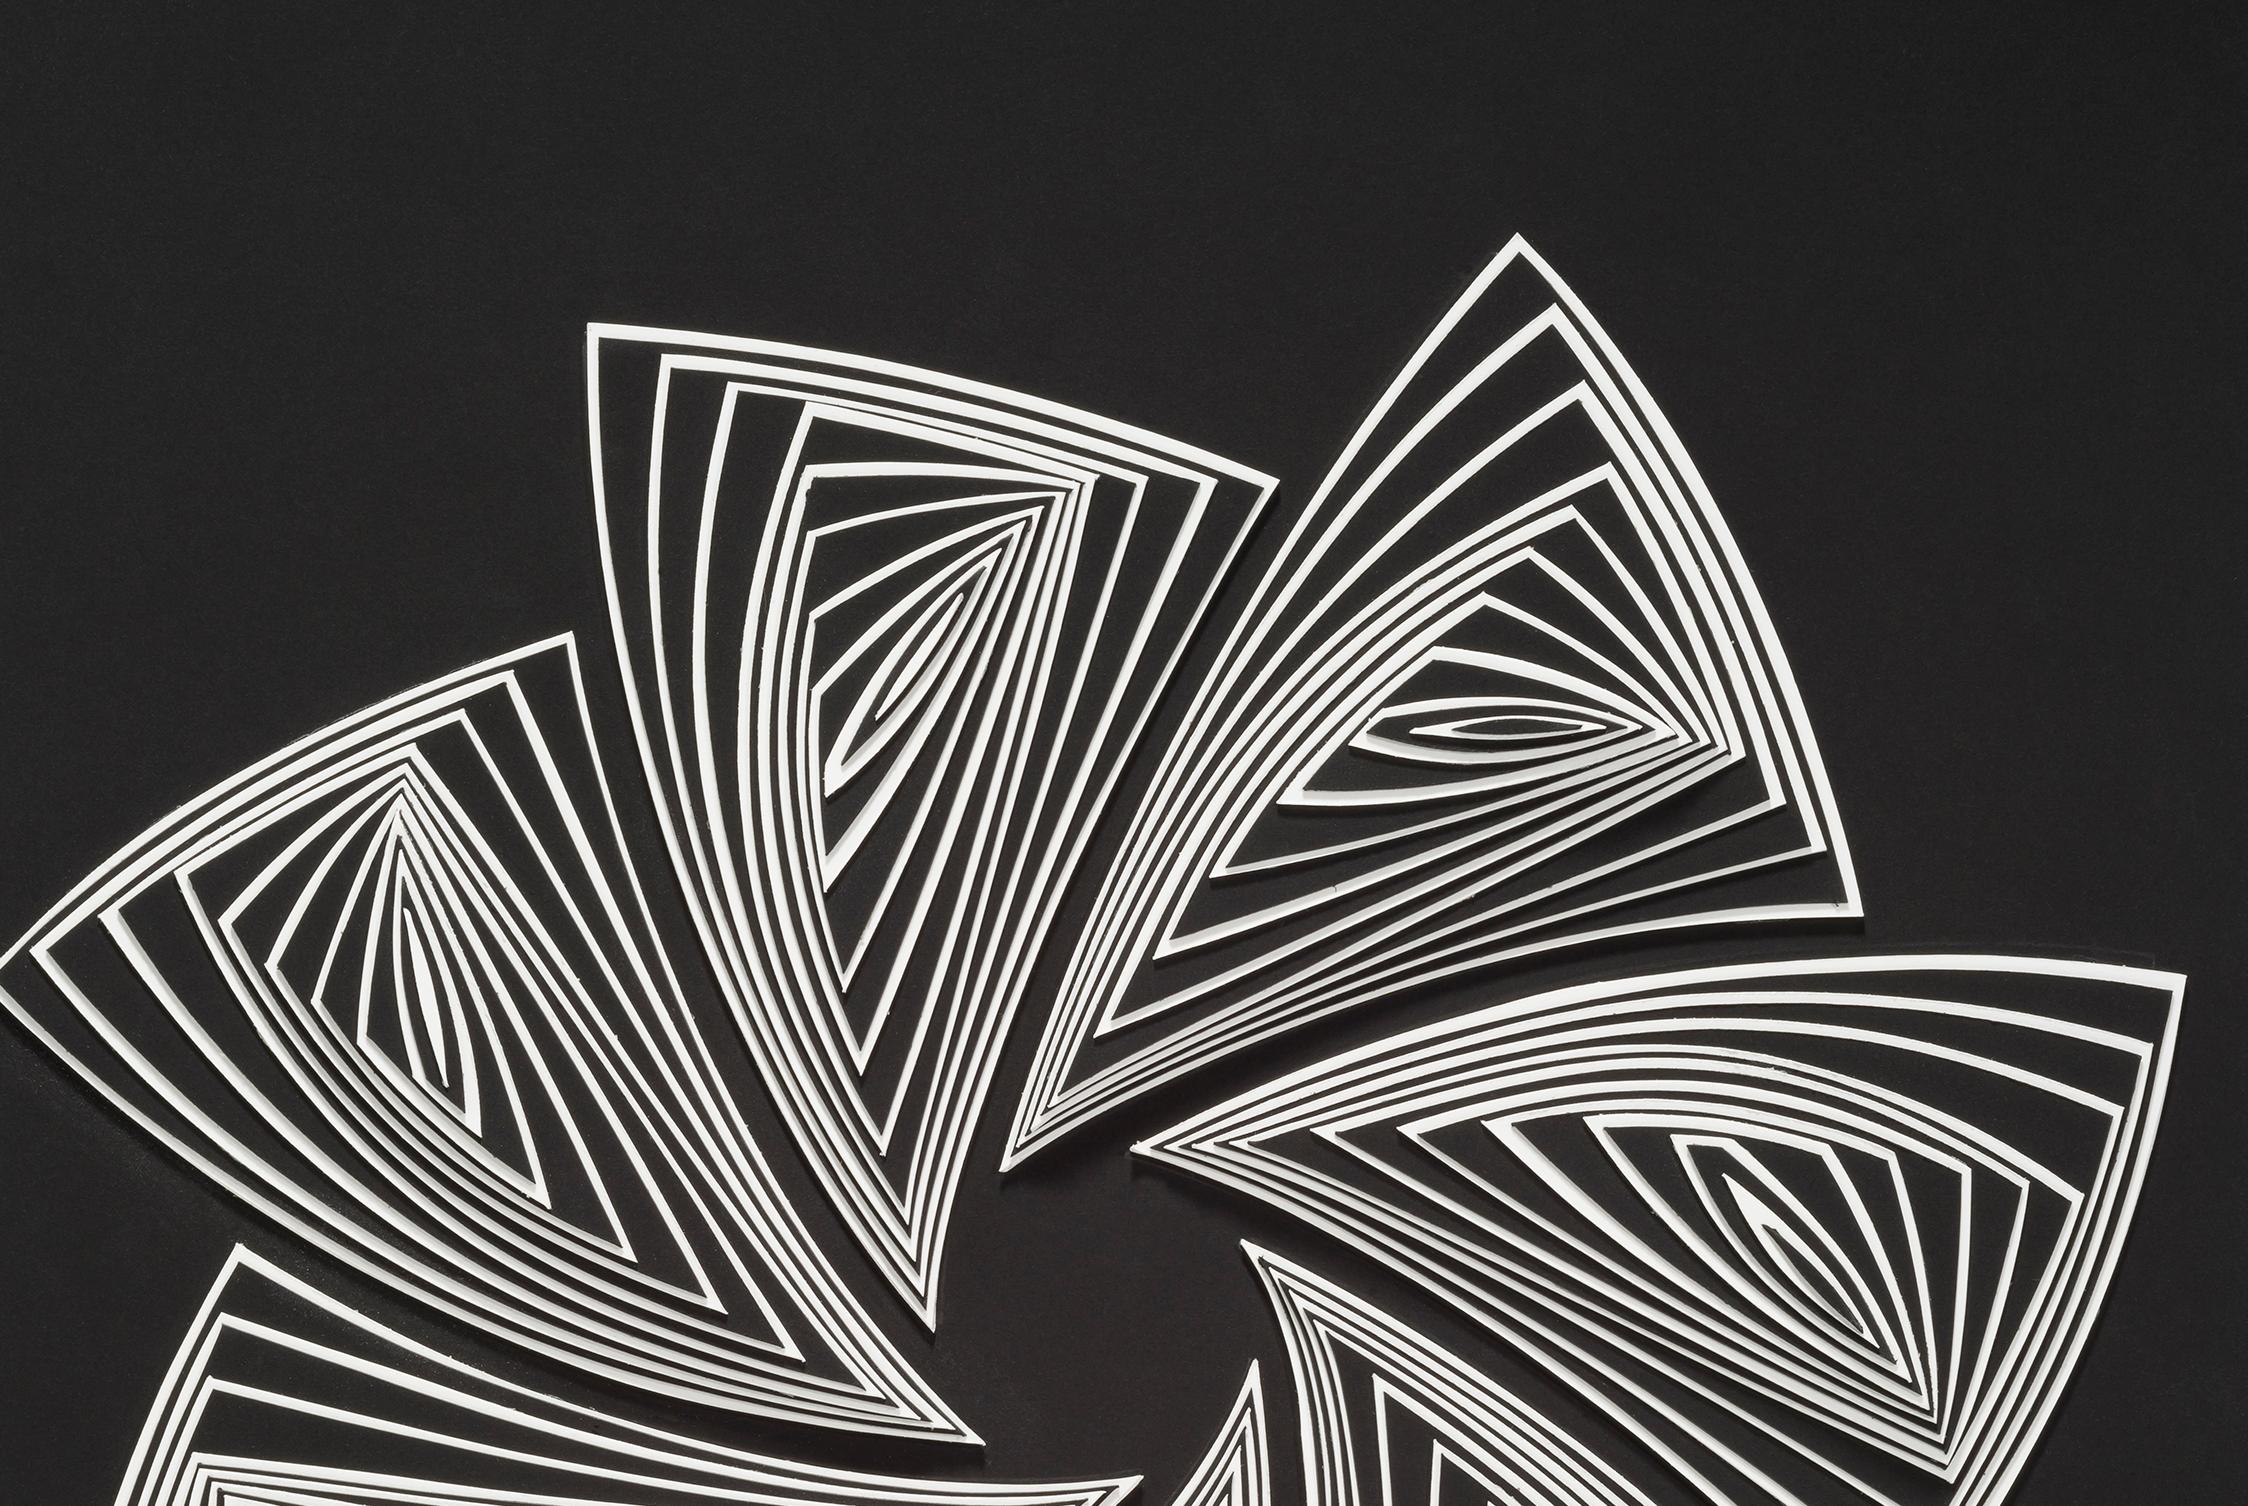 La série Cut Work d'Elizabeth Gruen est un processus de découpage de papier à main levée qui trace les contours de notre expérience émotionnelle en constante évolution à travers le mouvement de la forme, de la ligne et de la couleur. 

 En utilisant